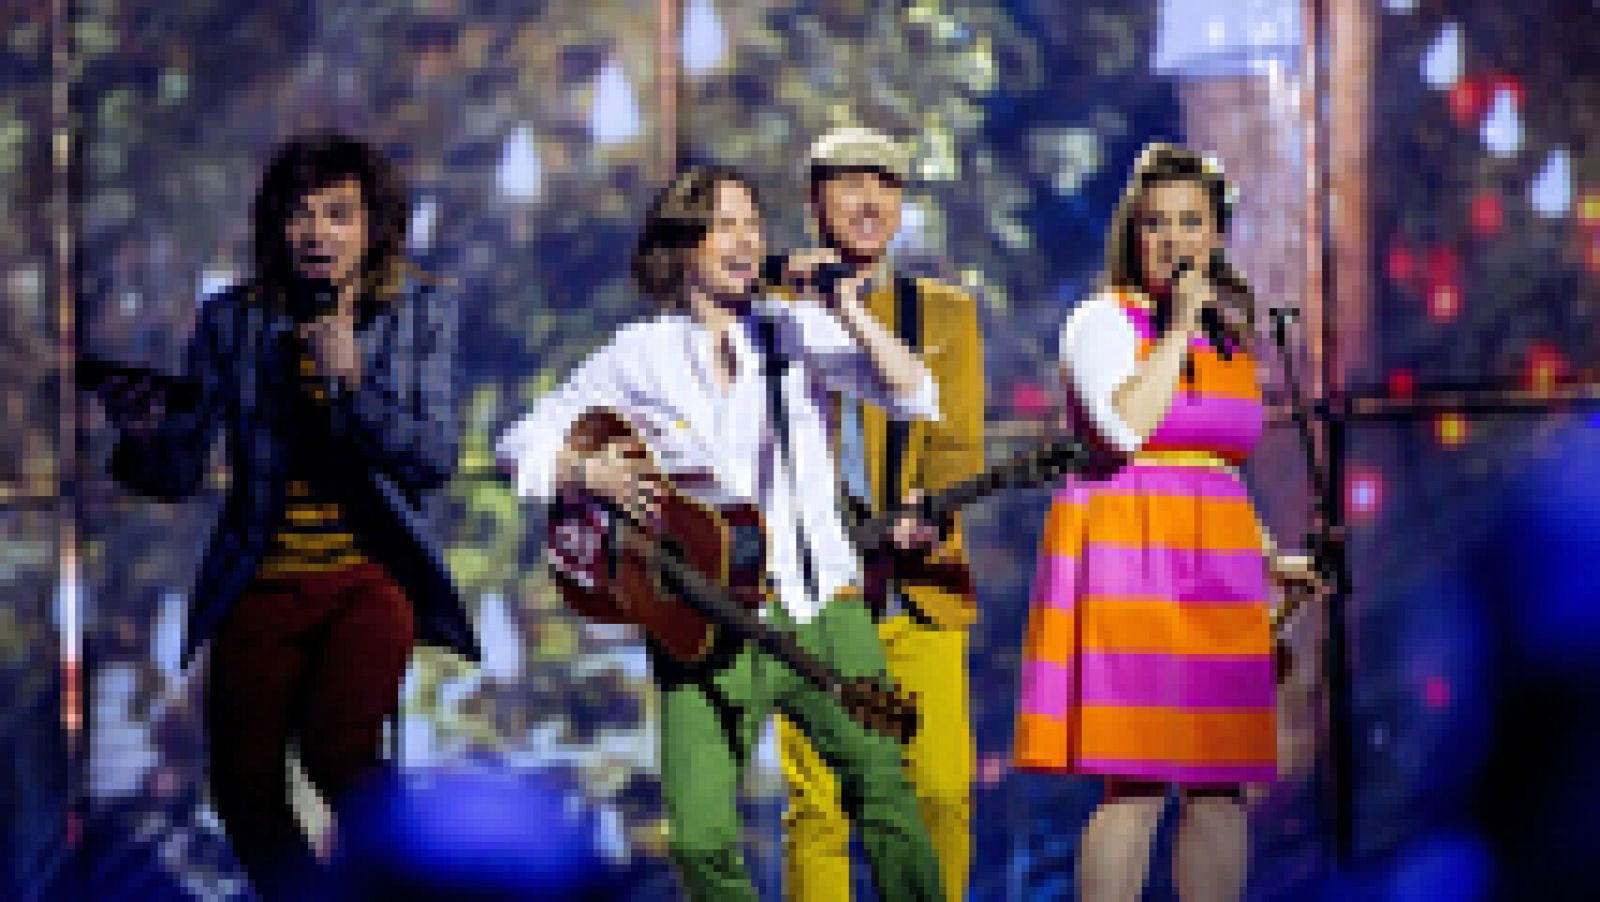  Eurovisión 2014 - Aarzemnieki representa a Letonia con la canción "Cake to bake"